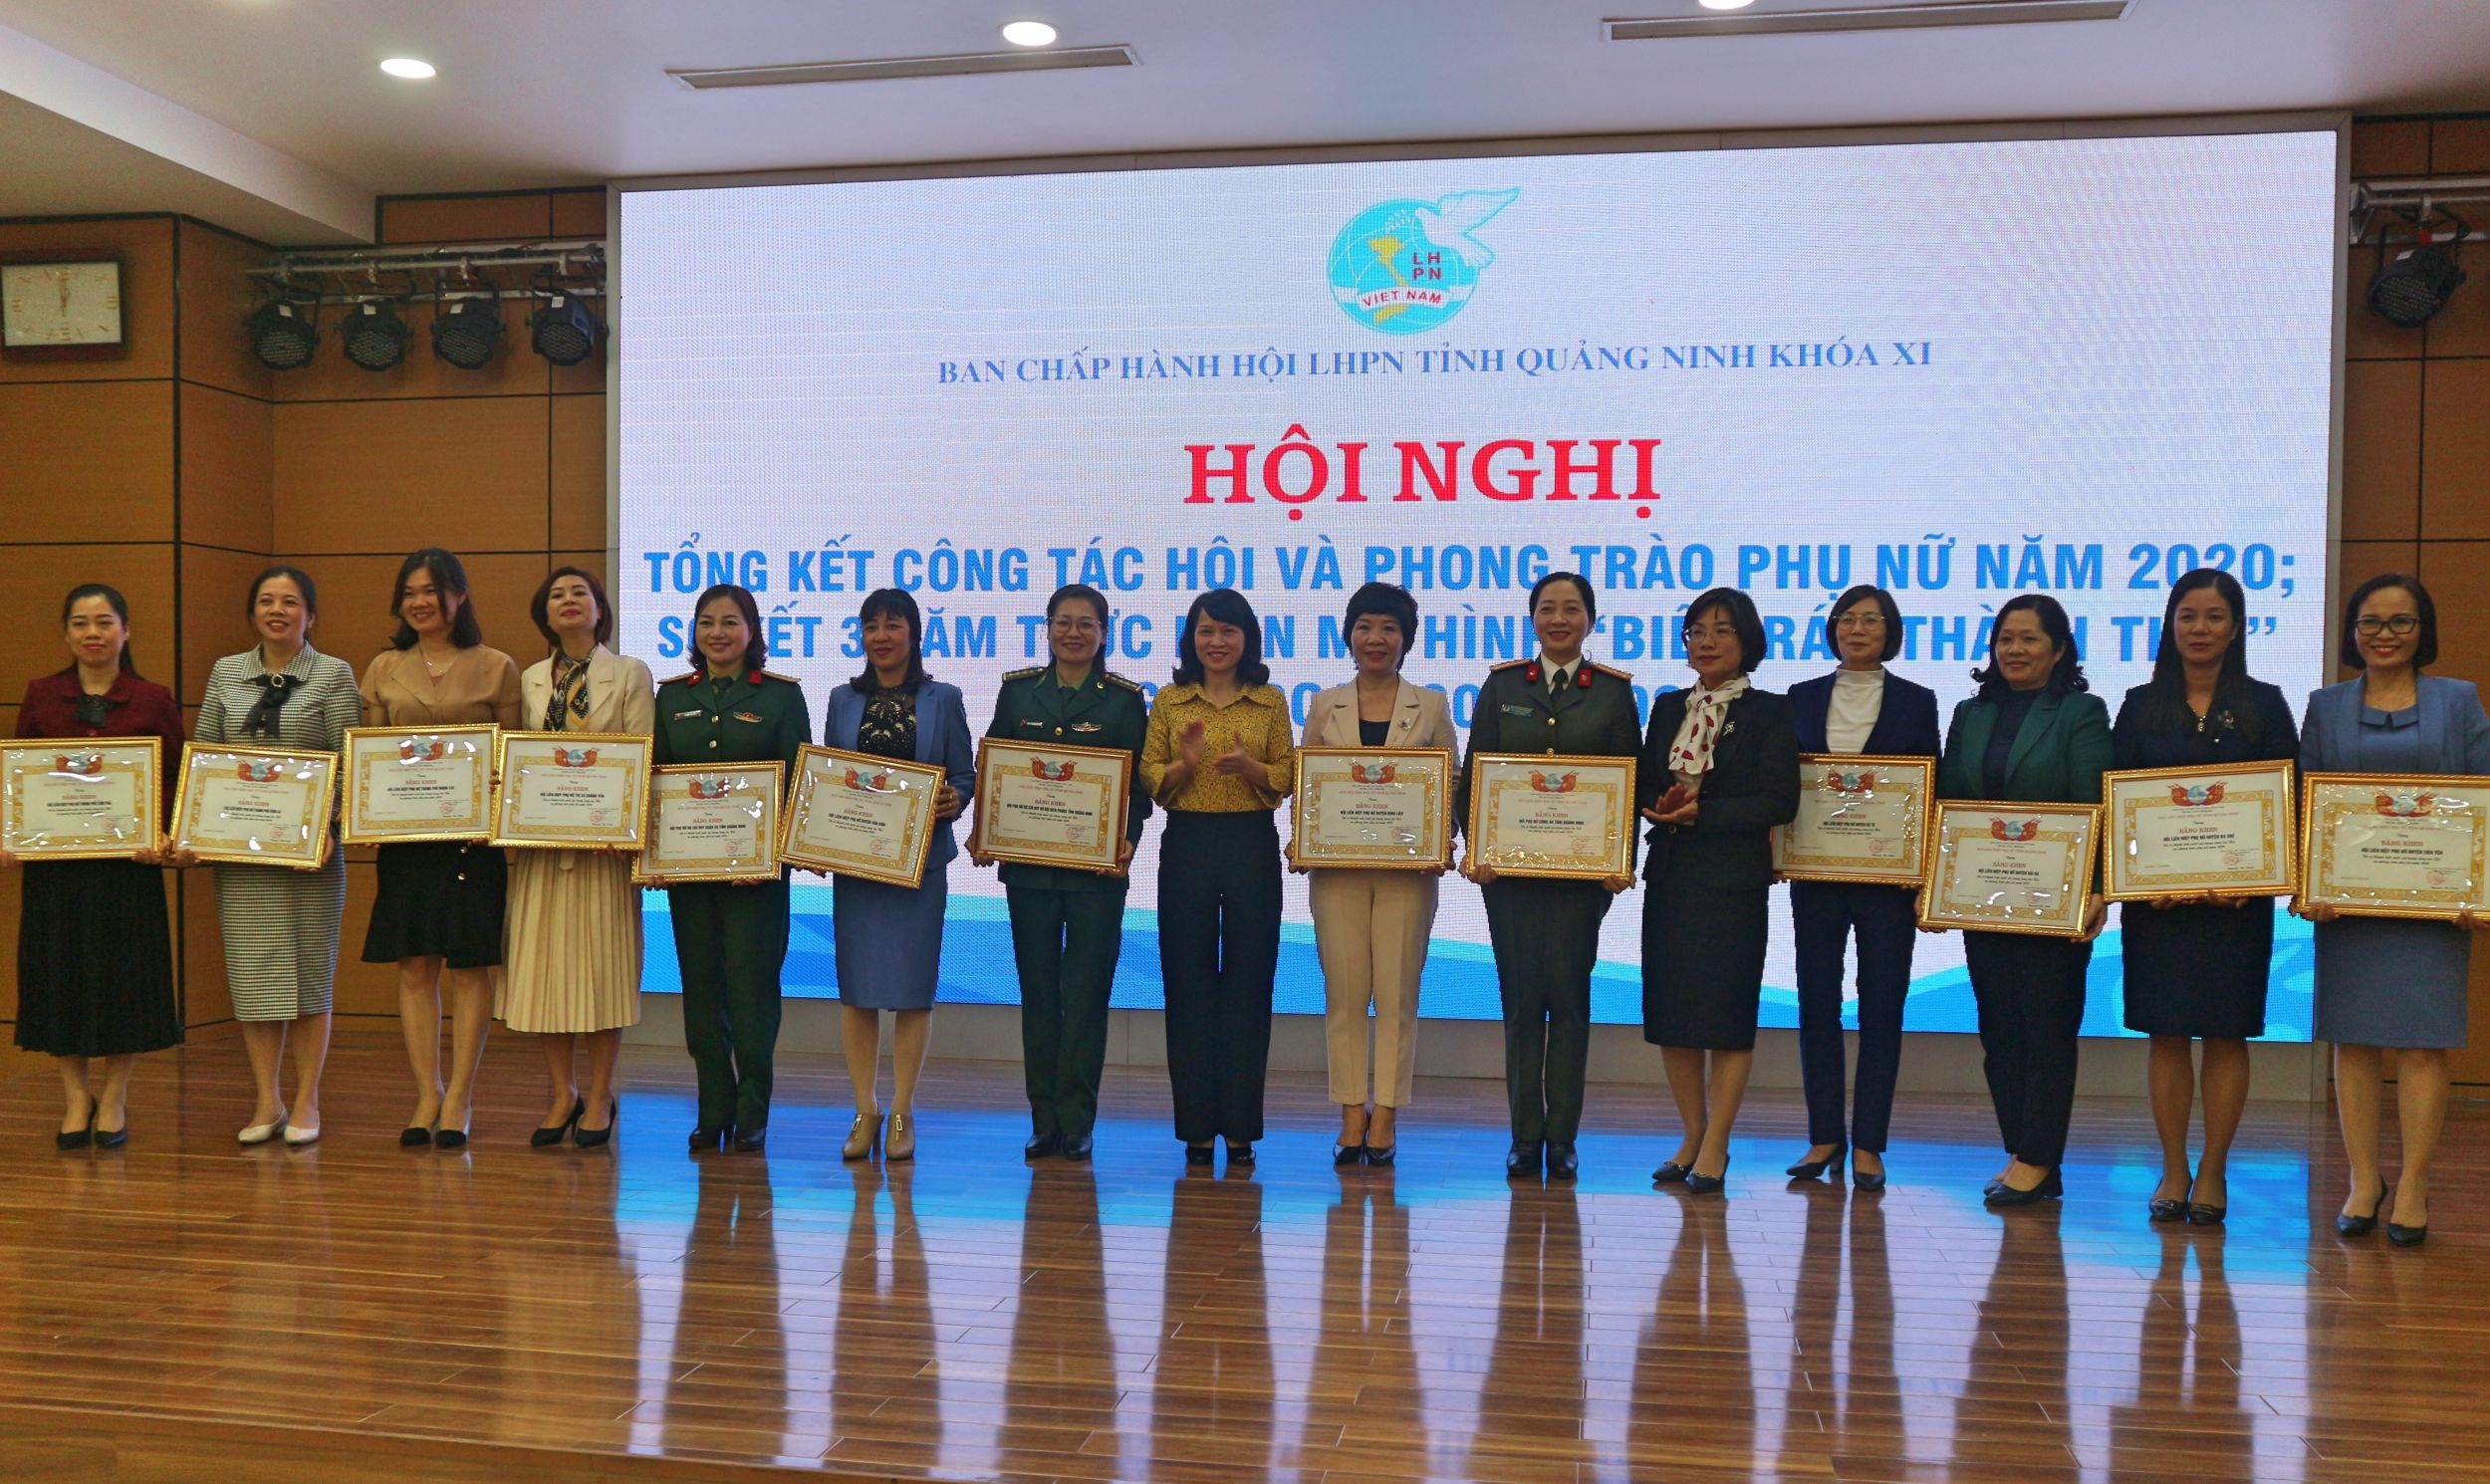 Các tập thể được Hội LHPN tỉnh khen thưởng vì đã có thành tích trong công tác Hội và phong trào phụ nữ năm 2020.